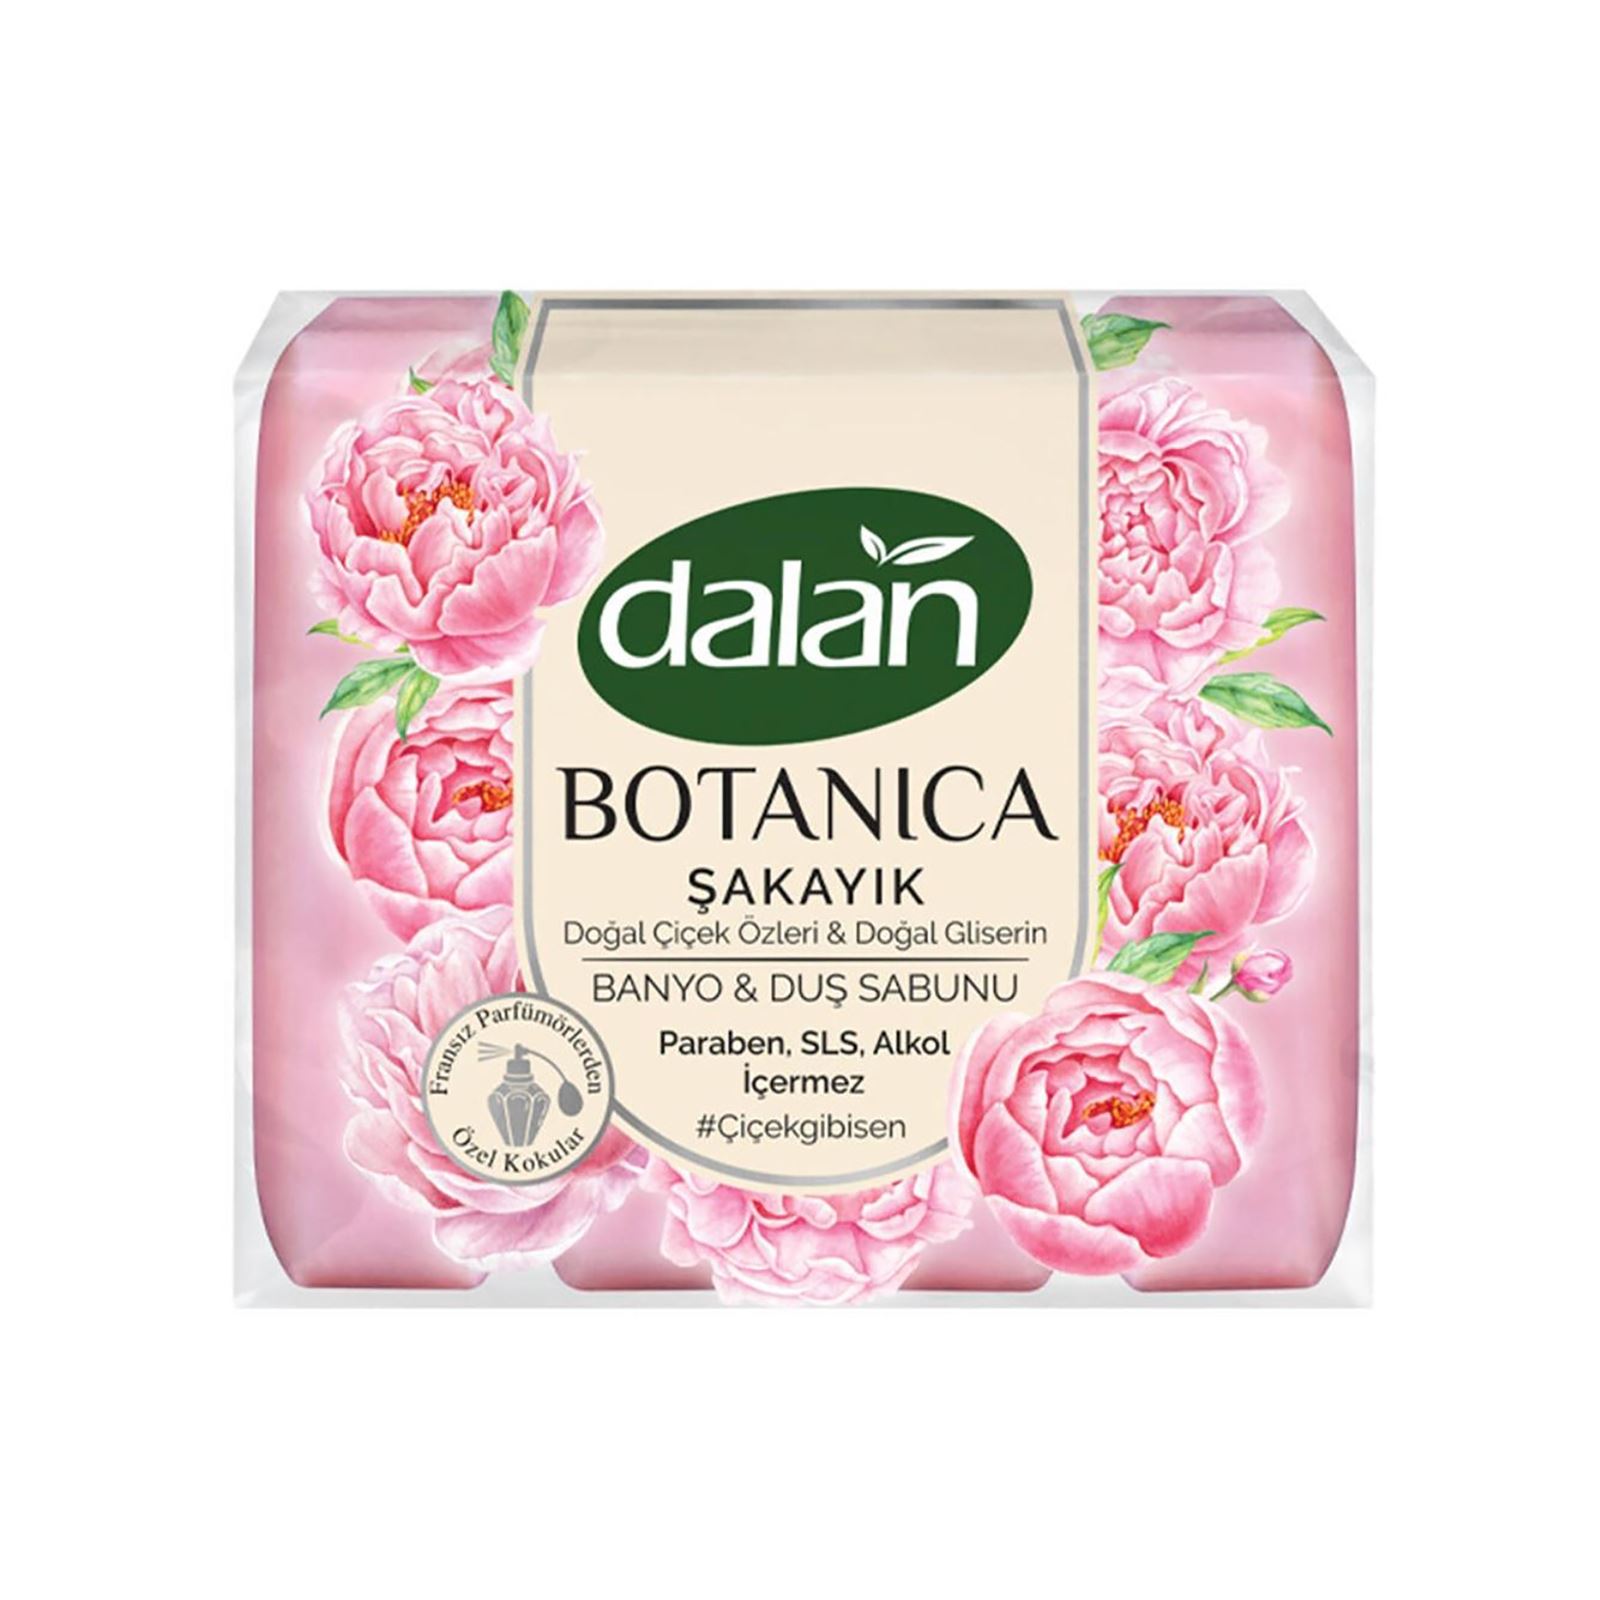 Dalan Botanica Duş Sabunu Şakayık 4x150 gr